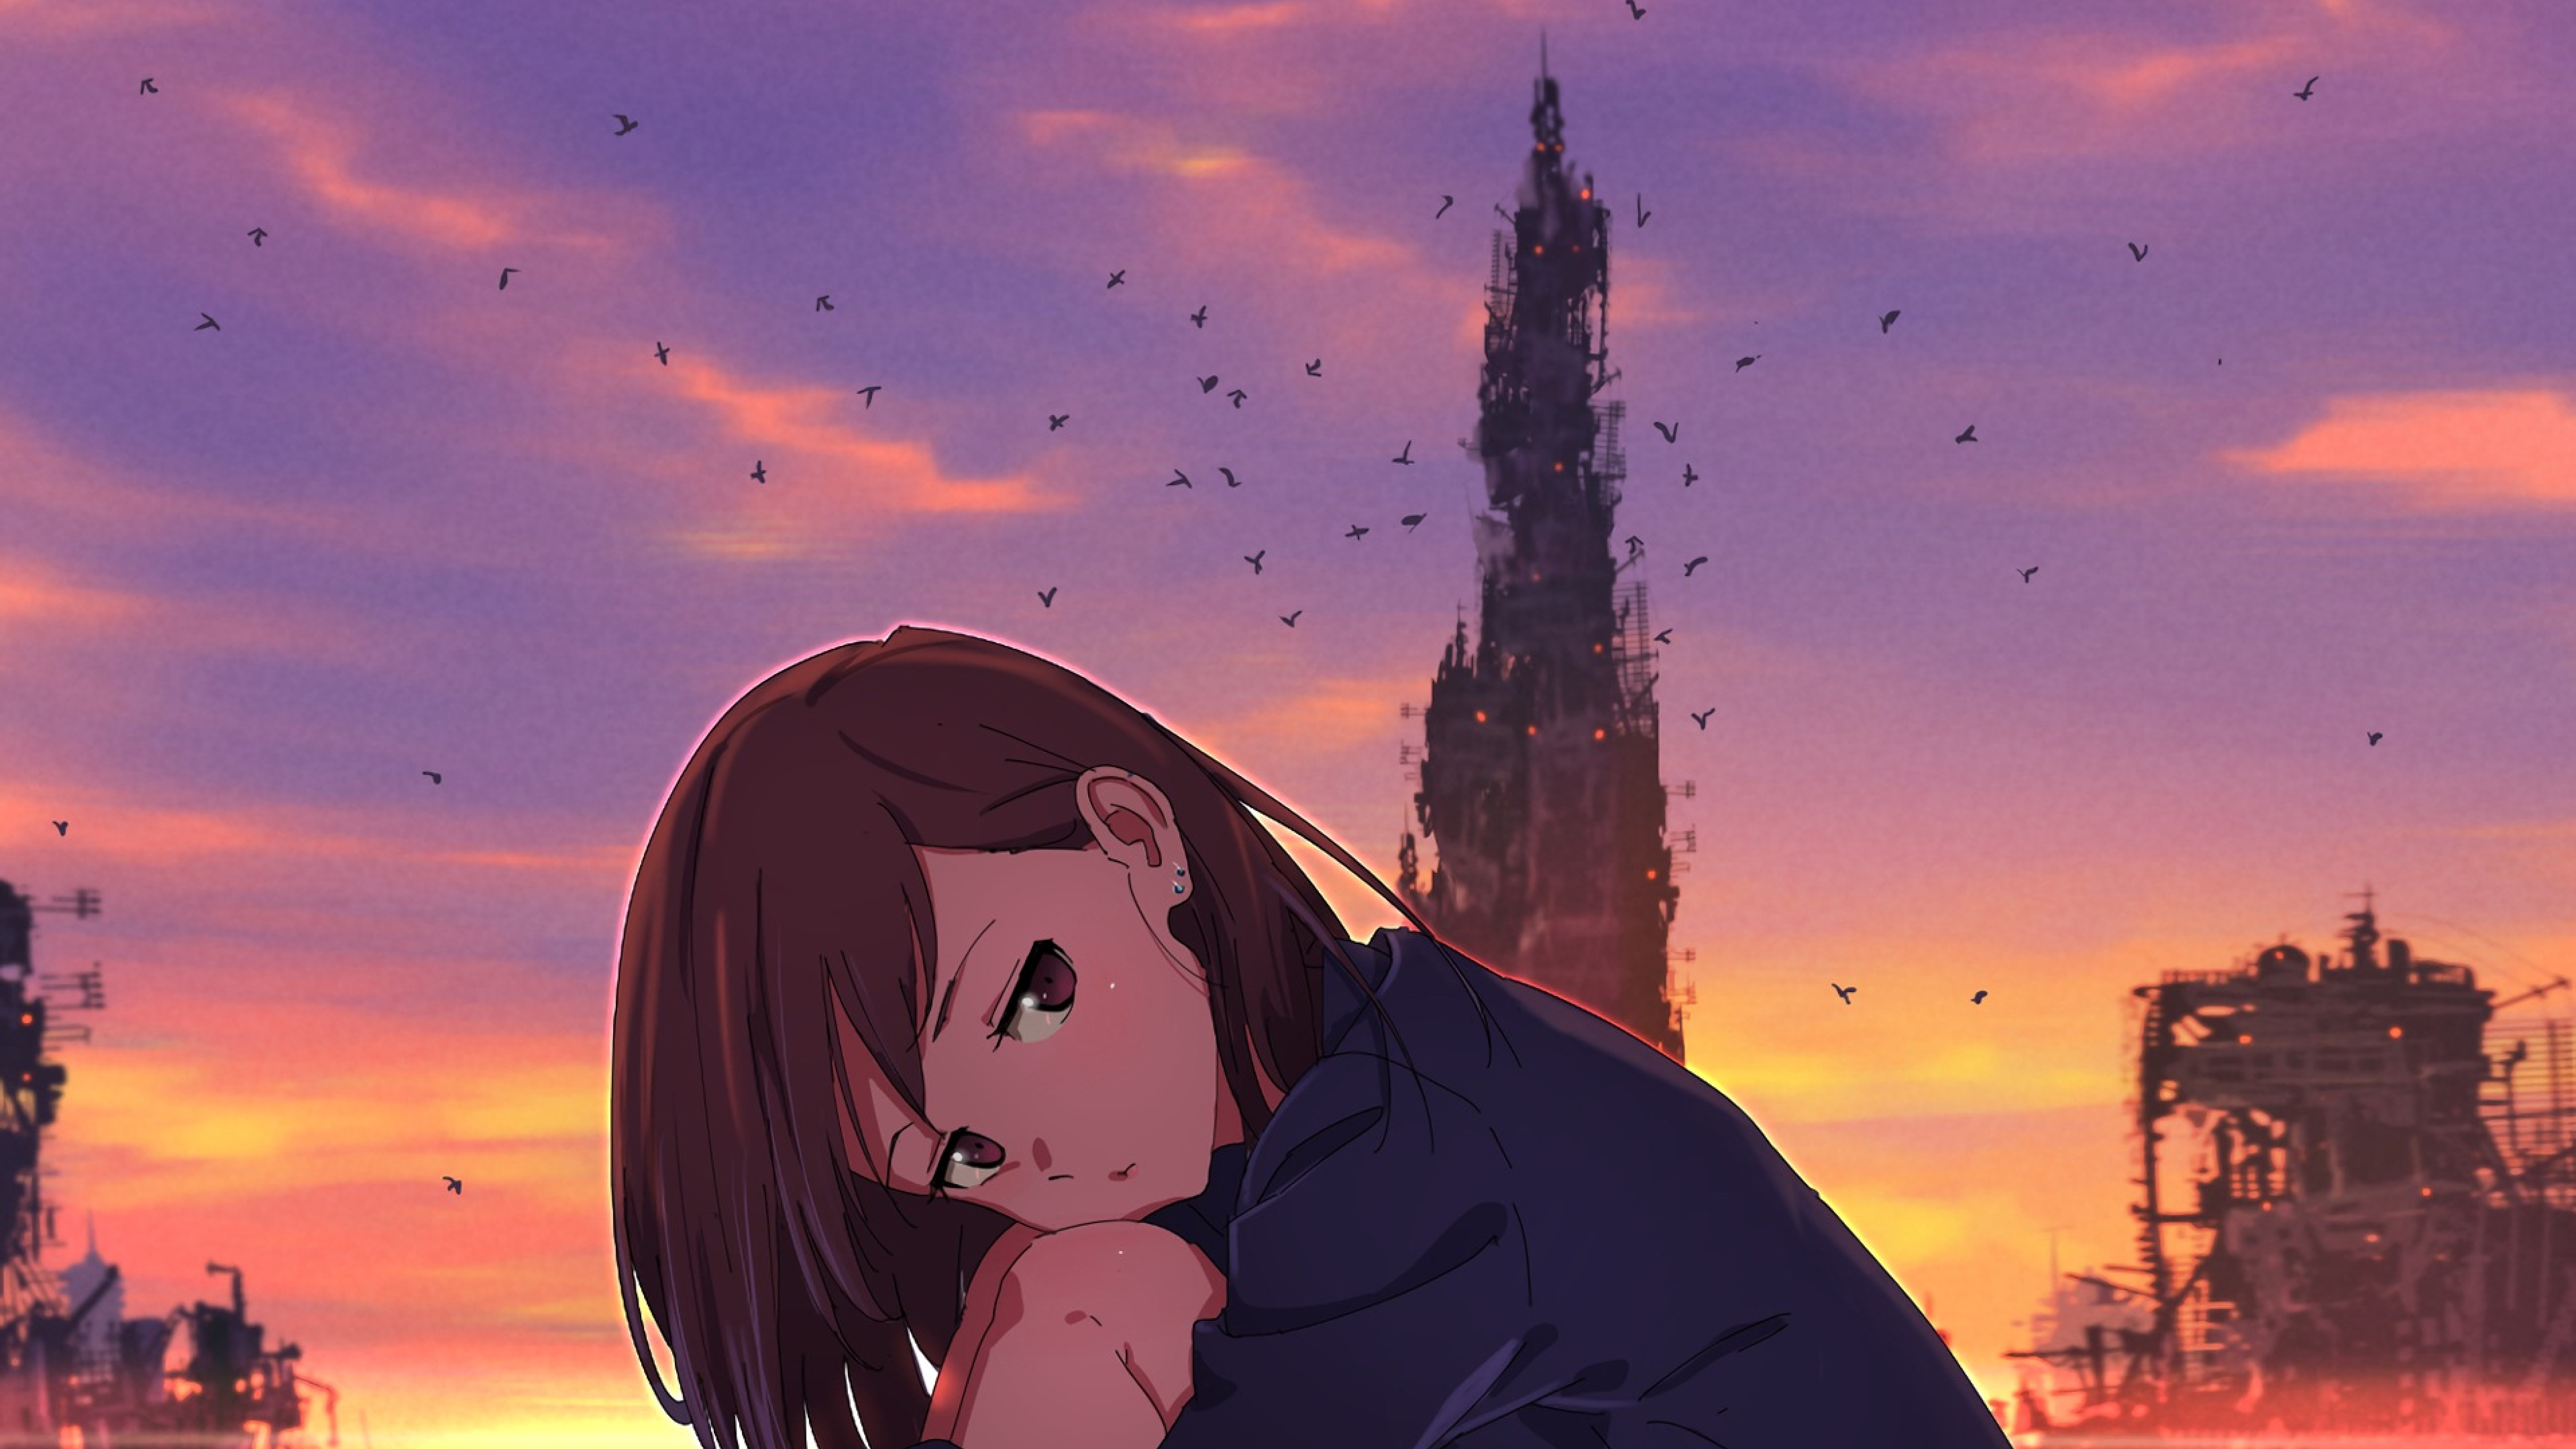 7680x4320 Broken Heart Anime Girl 8k Wallpaper Hd Anime 4k